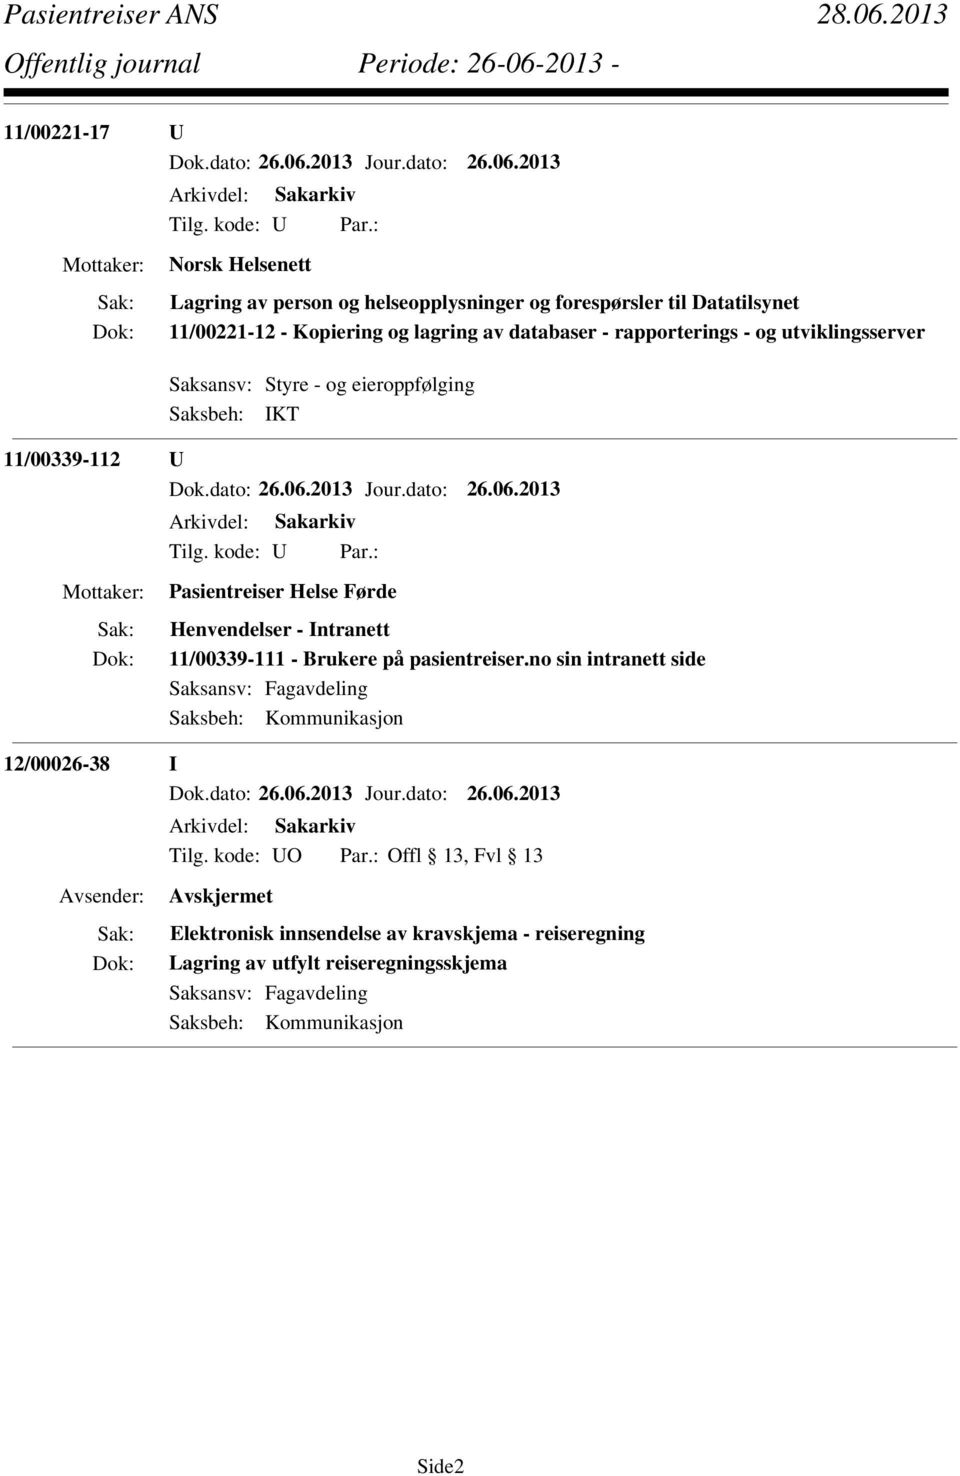 Henvendelser - Intranett 11/00339-111 - Brukere på pasientreiser.no sin intranett side Saksbeh: Kommunikasjon 12/00026-38 I Tilg.